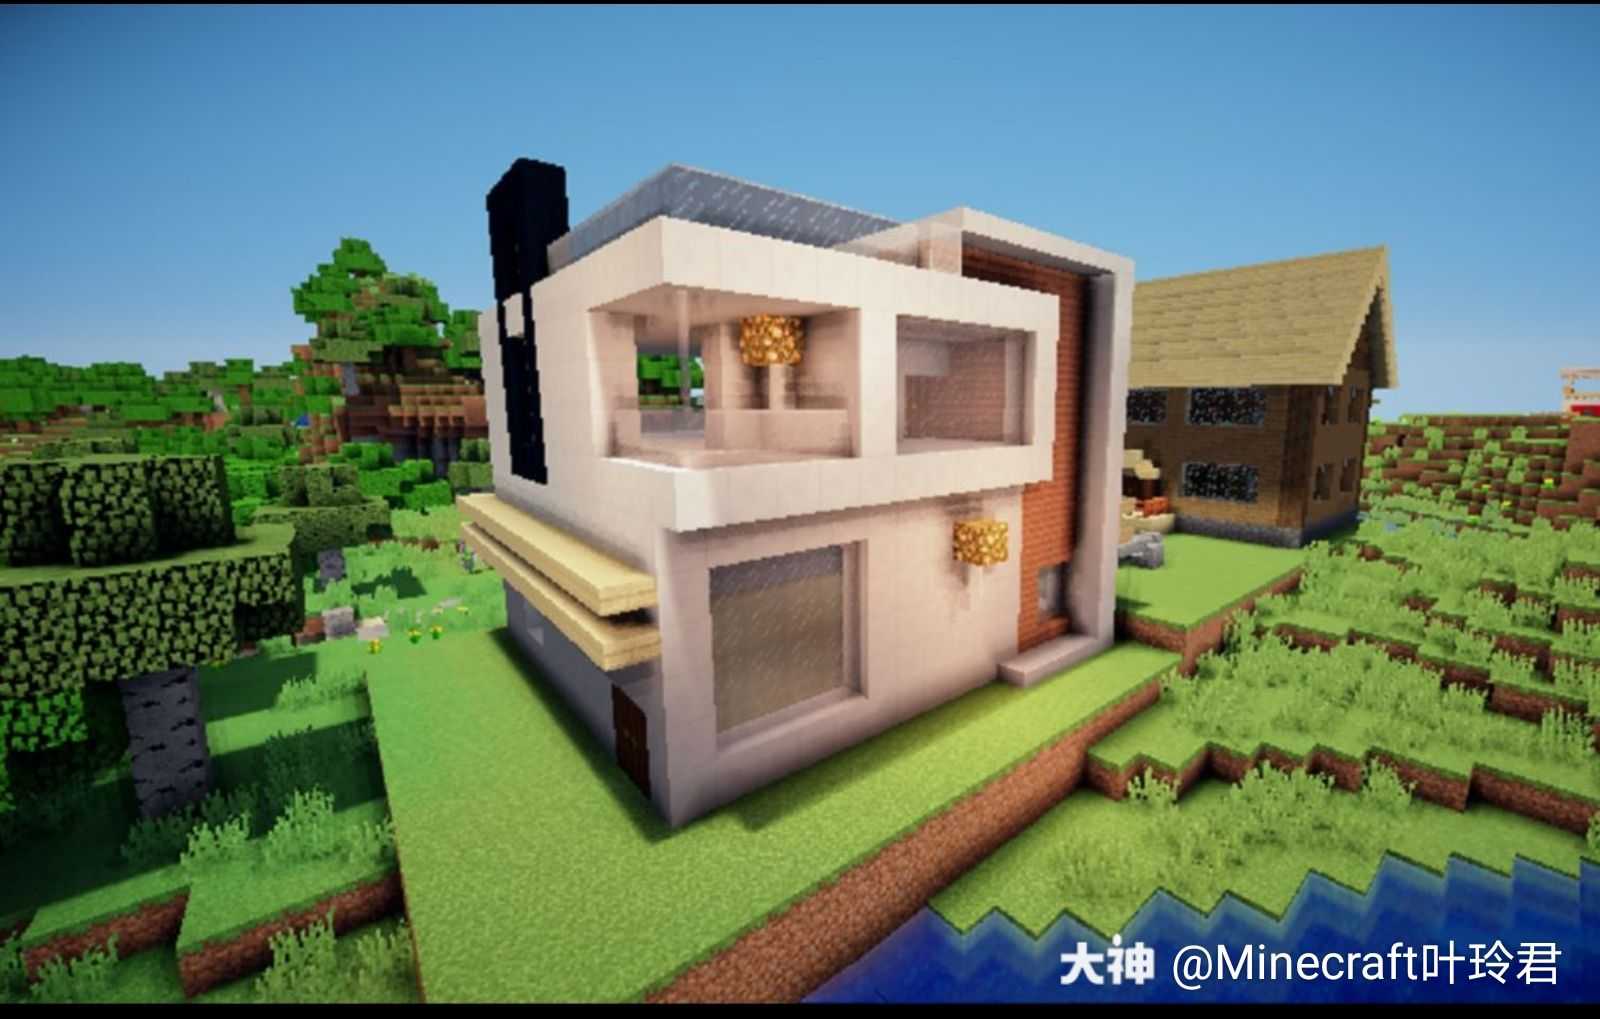 作品名称 别墅设计理念 来自网易大神我的世界圈子 Minecraft叶玲君